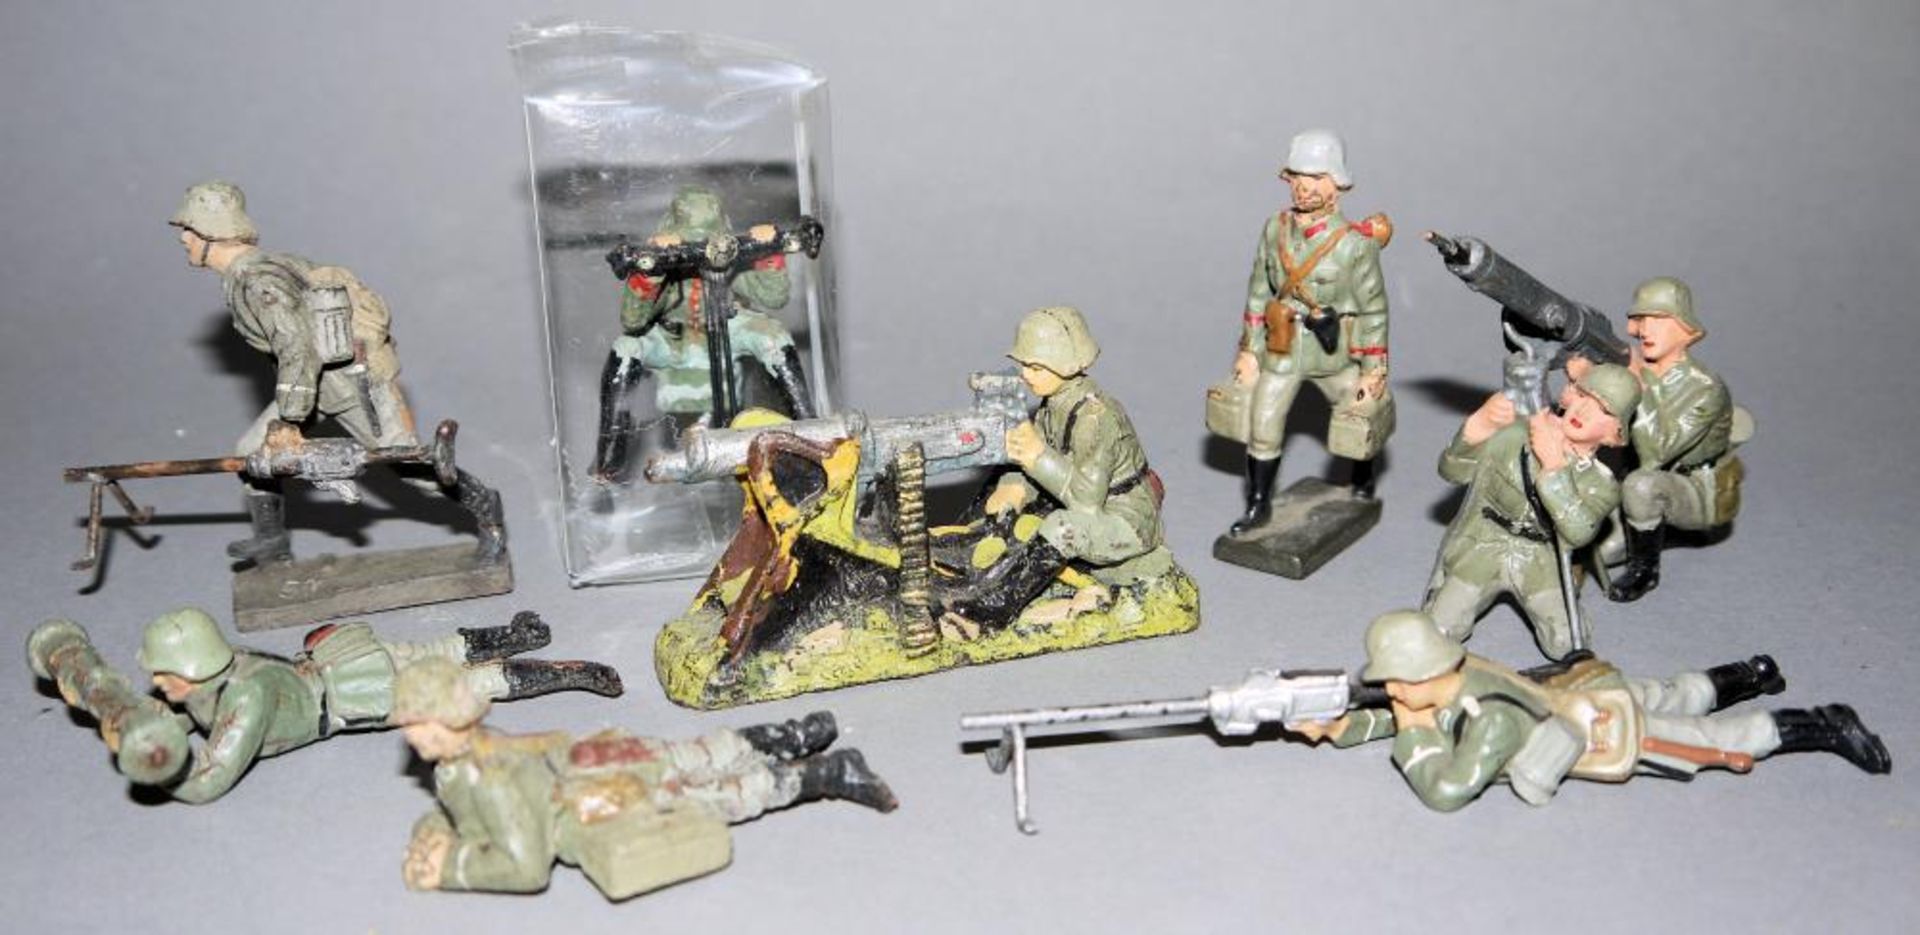 8 Spielzeug-Soldaten WK II Maschinengewehr-Gruppe, Elastolin & Lineol 4 x mit Maschinengewehr, 2 x